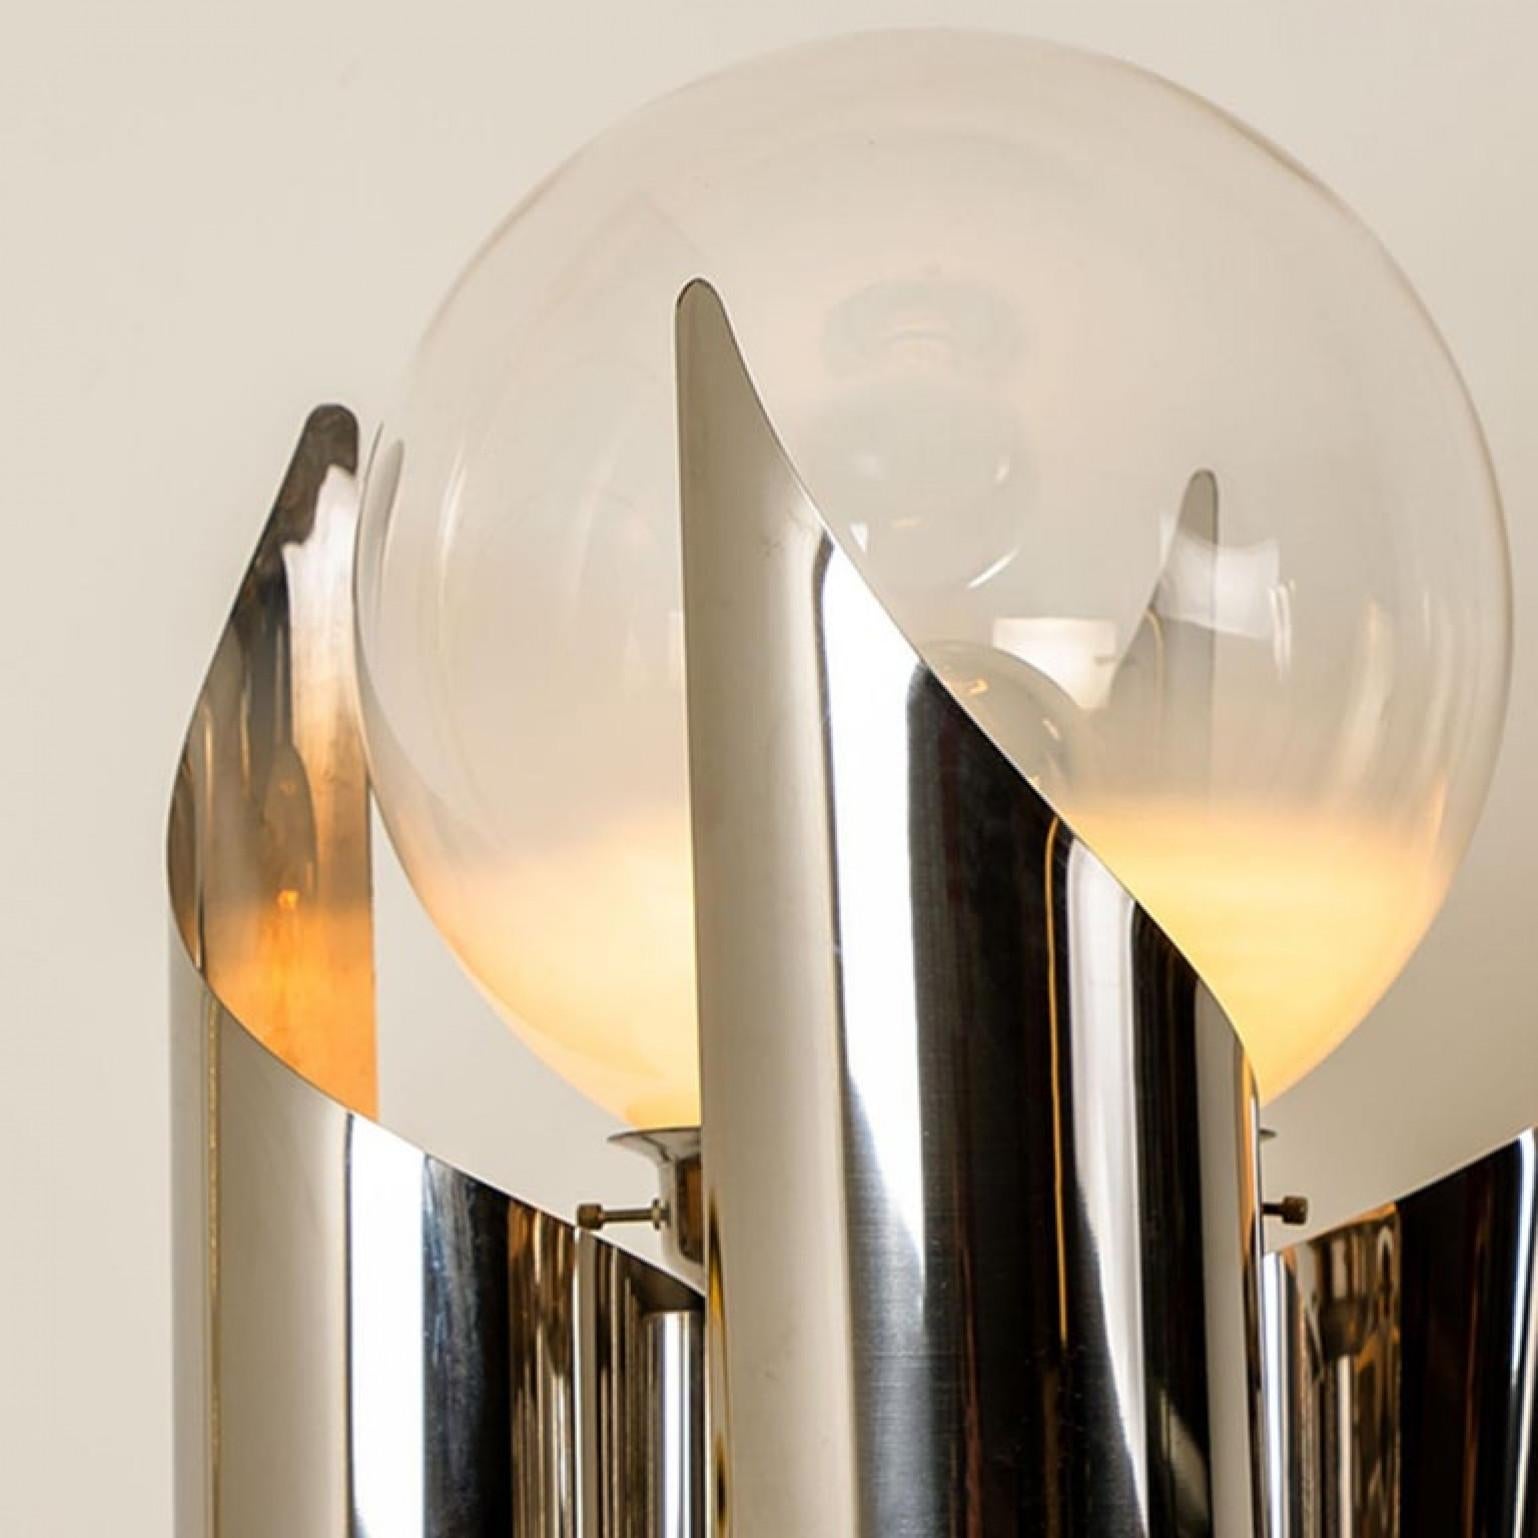 Spiralförmige Stehlampe der Firma Reggiani, um 1970. Edelstahl mit mundgeblasener Murano-Glaskugel.

Ein besonderes Stück!

In sehr gutem Zustand. Gereinigt, gut verkabelt und einsatzbereit. Beleuchtet schön. Die Stehleuchte benötigt 1 x E27